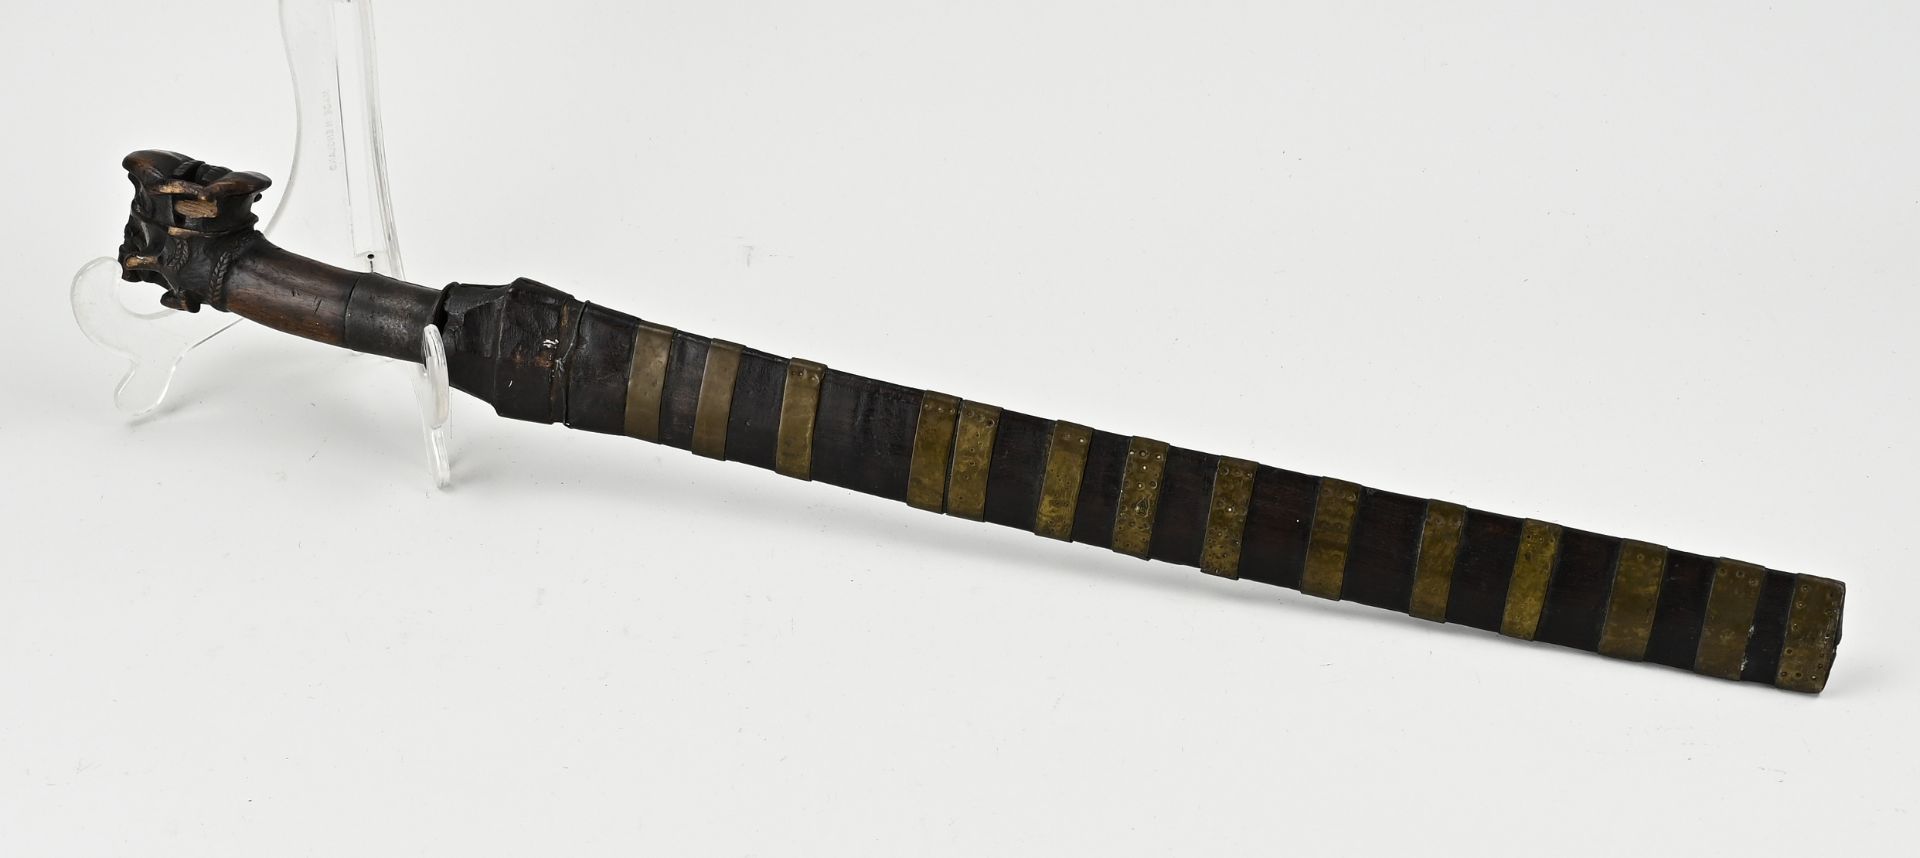 Antique Indonesian machete, L 59 cm. - Image 2 of 2